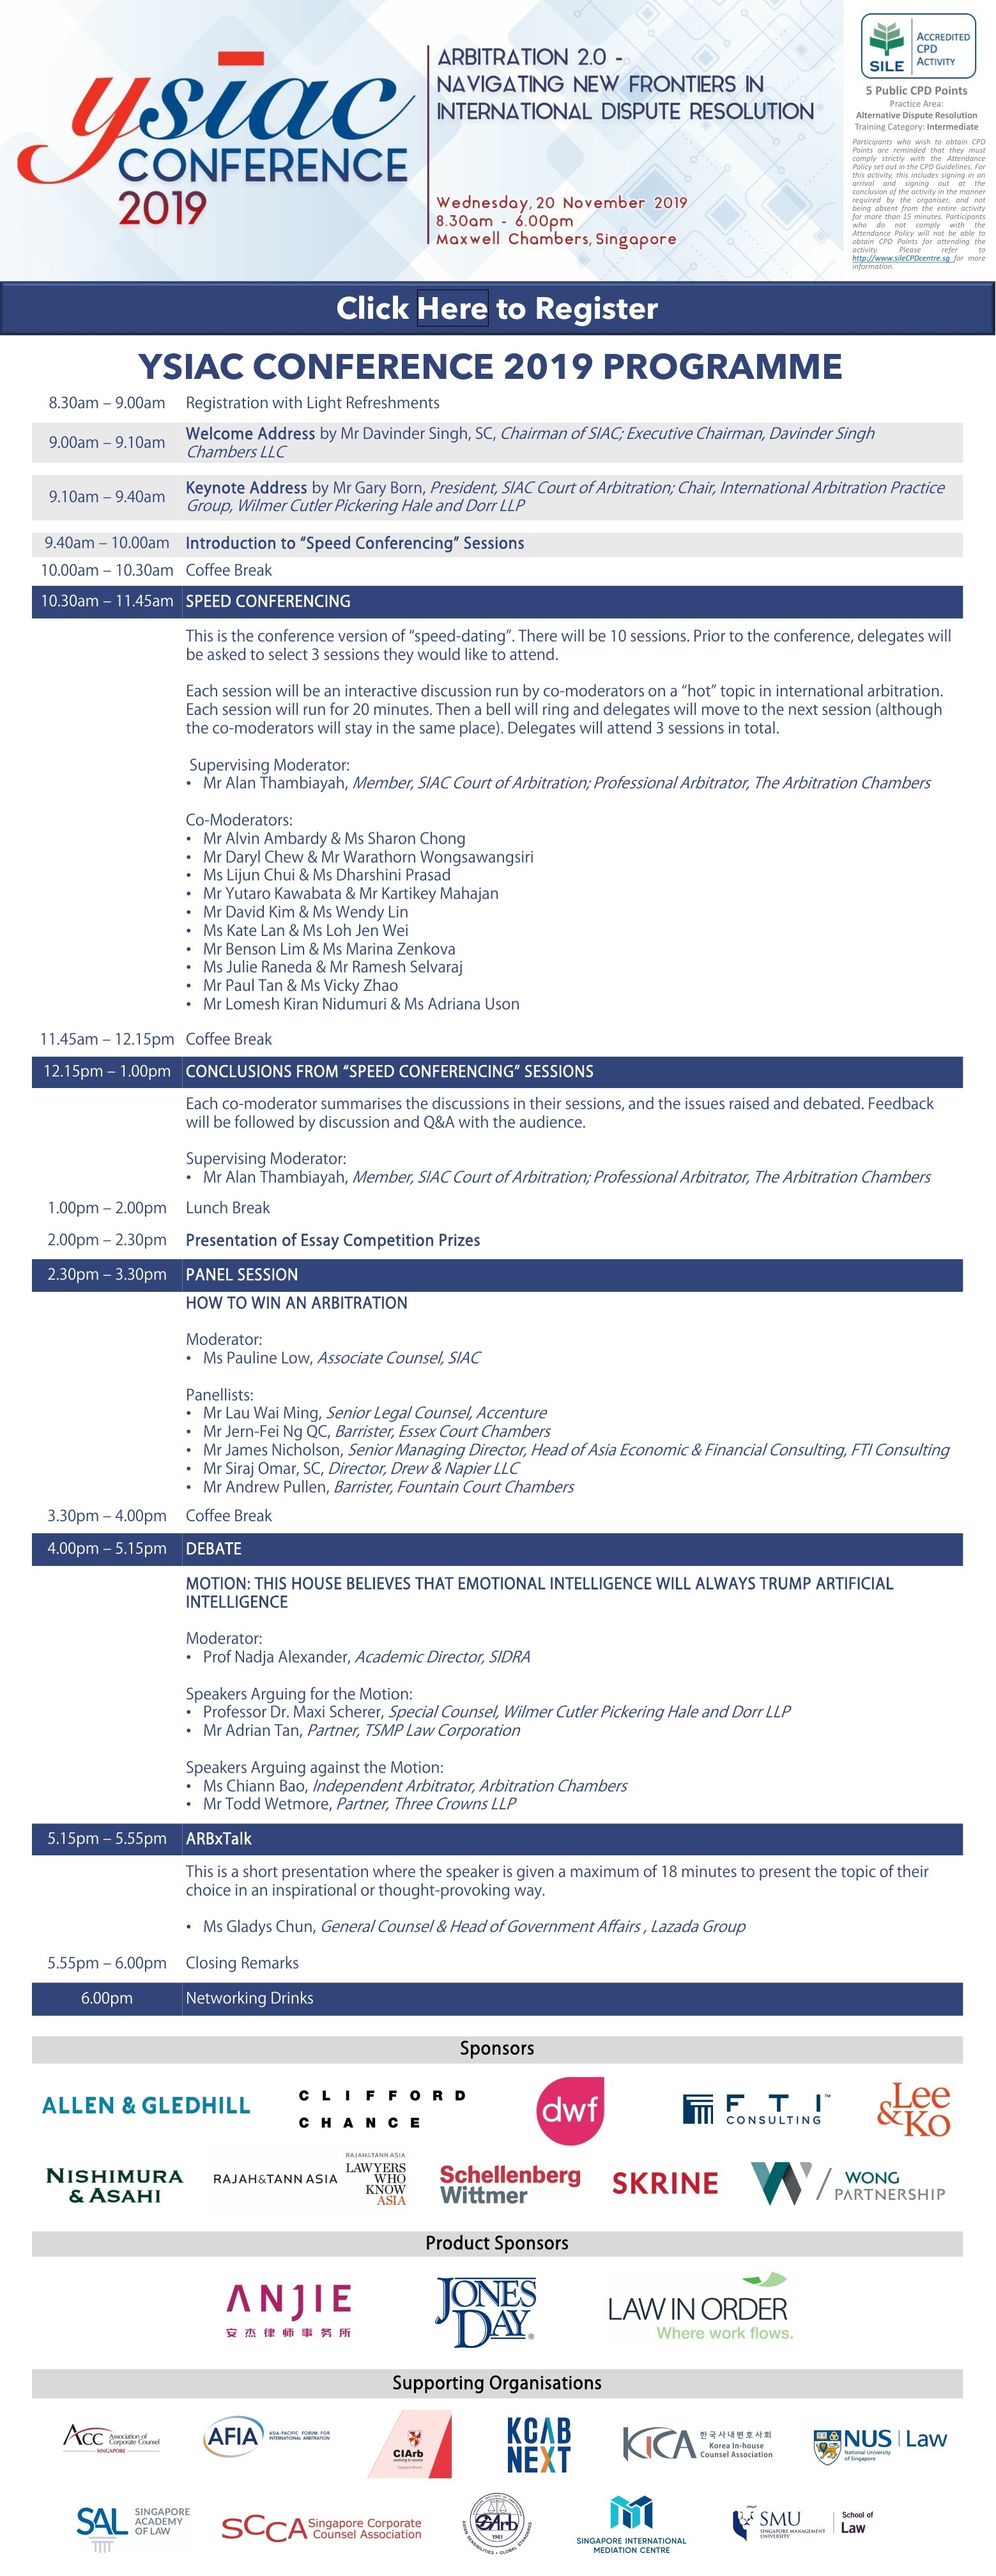 [YSIAC Conference] - 한사회 후원 컨퍼런스 안내